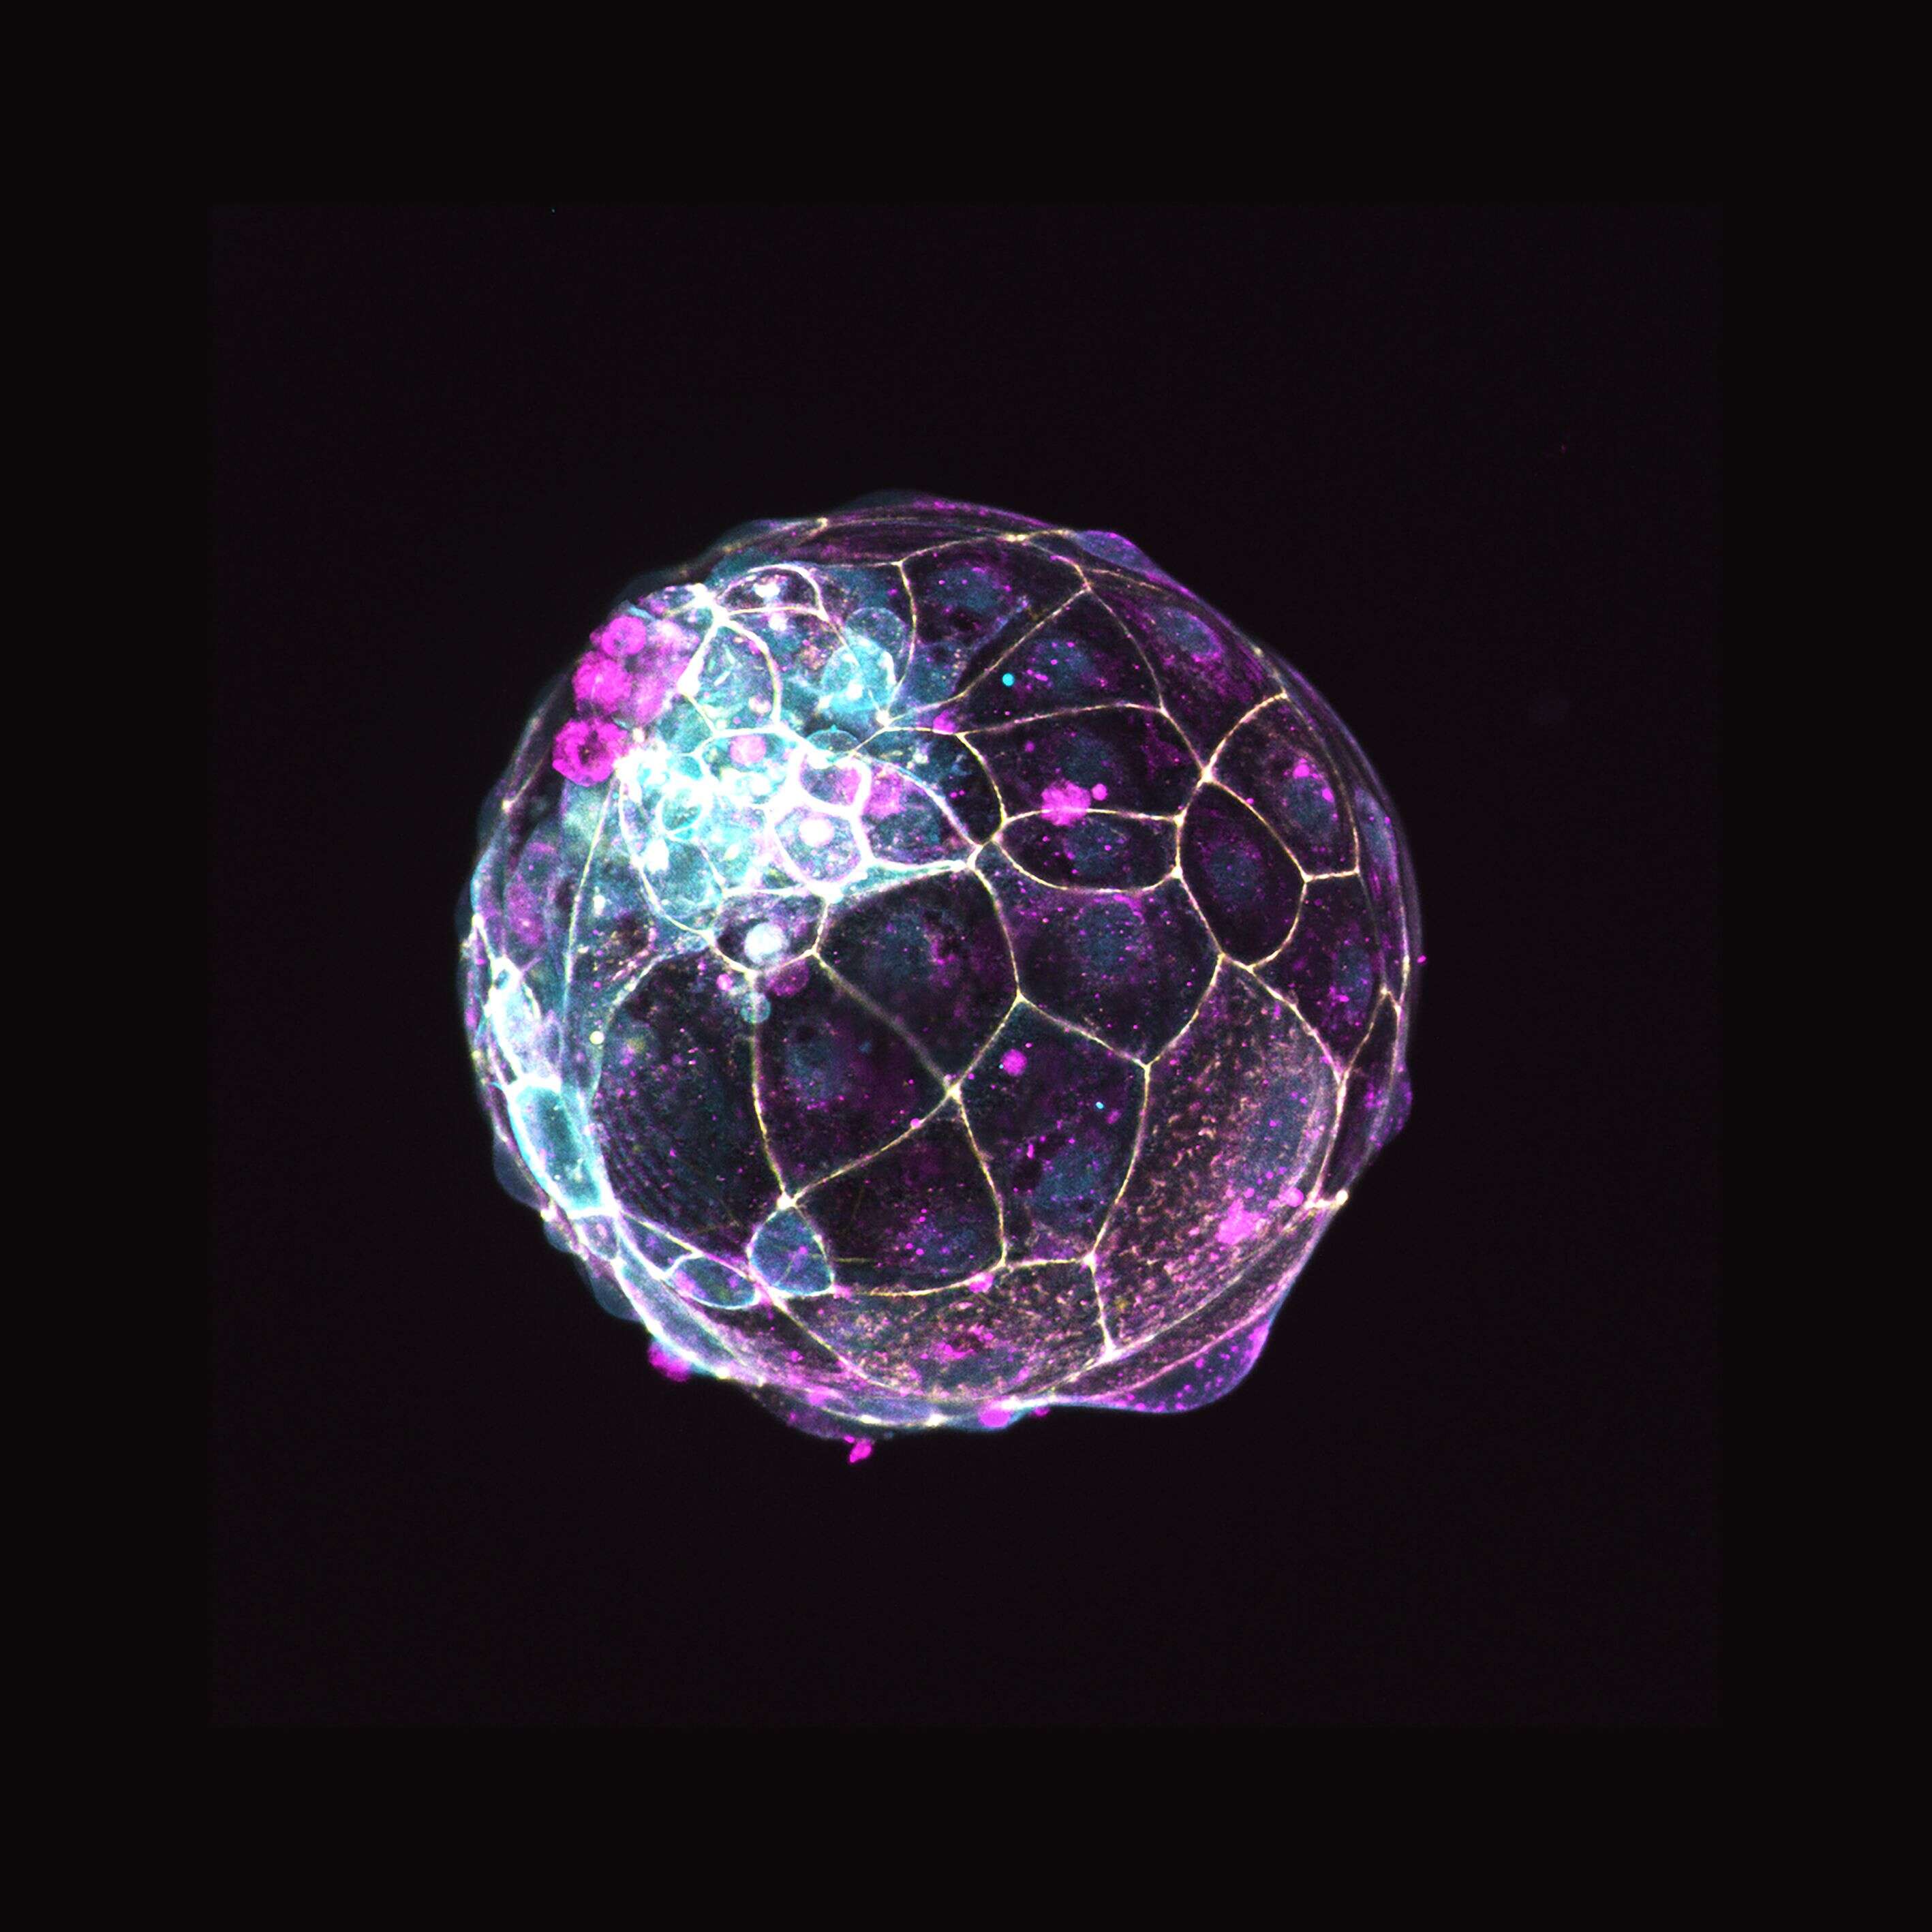 Voici un blastoïde créé en laboratoire, c'est l'équivalent d'un blastocyte, c'est-à-dire un embryon de quelques jours à peine.